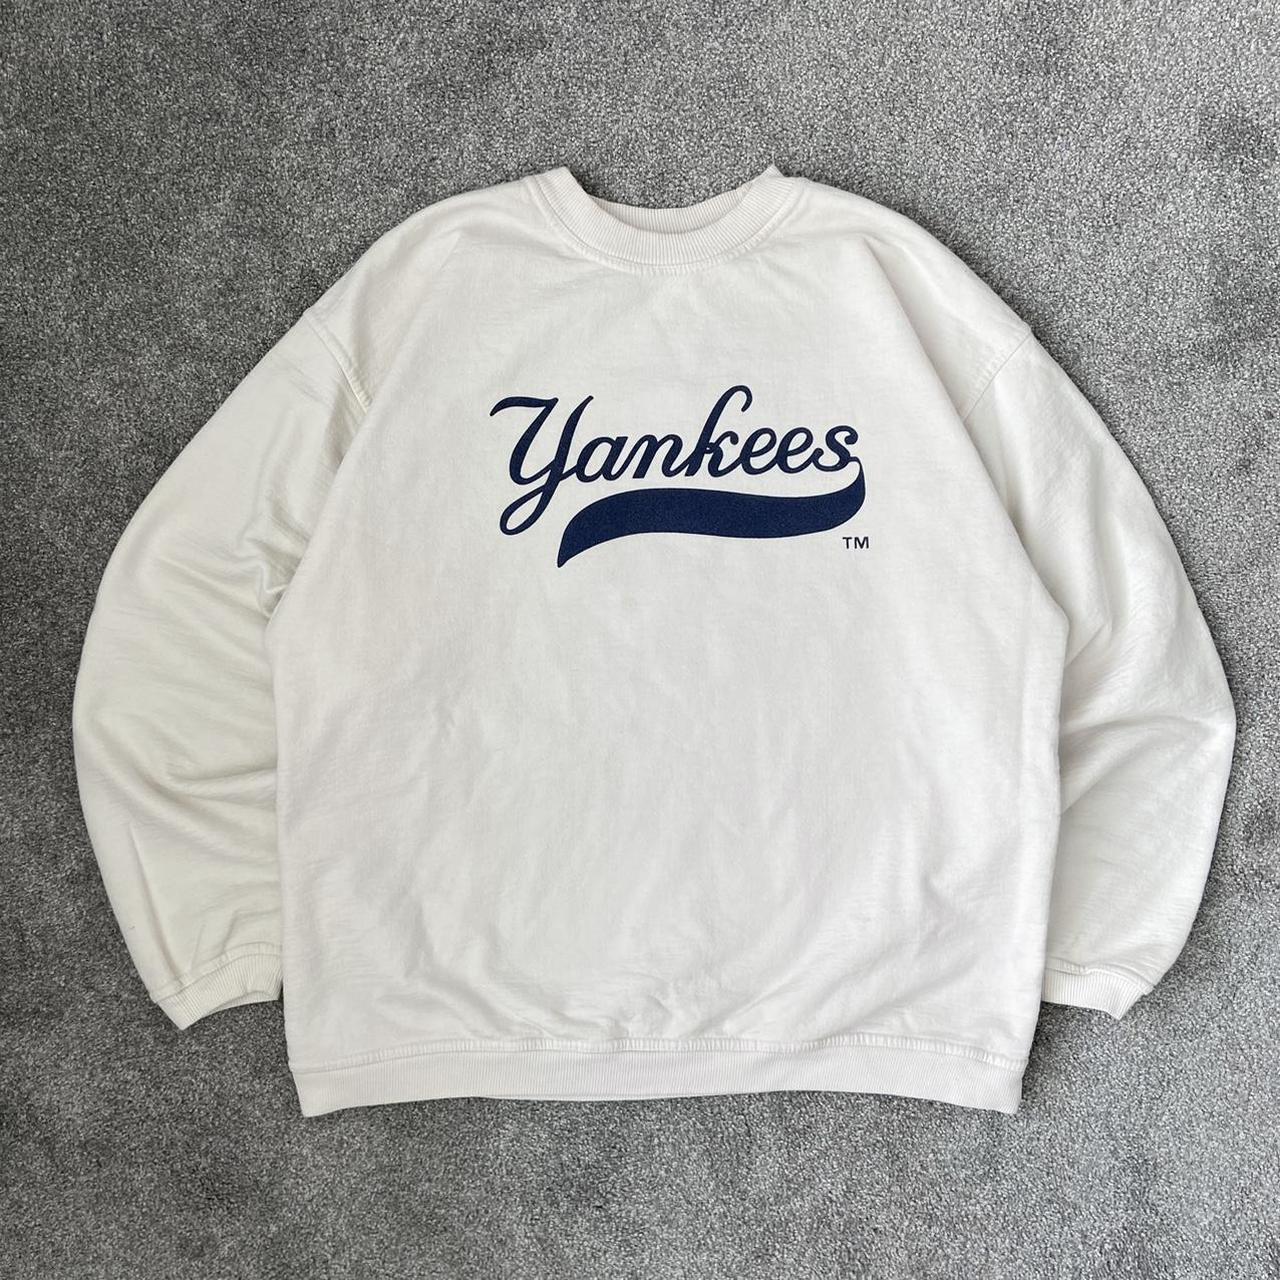 Vintage 90's Yankees Crewneck Sweatshirt